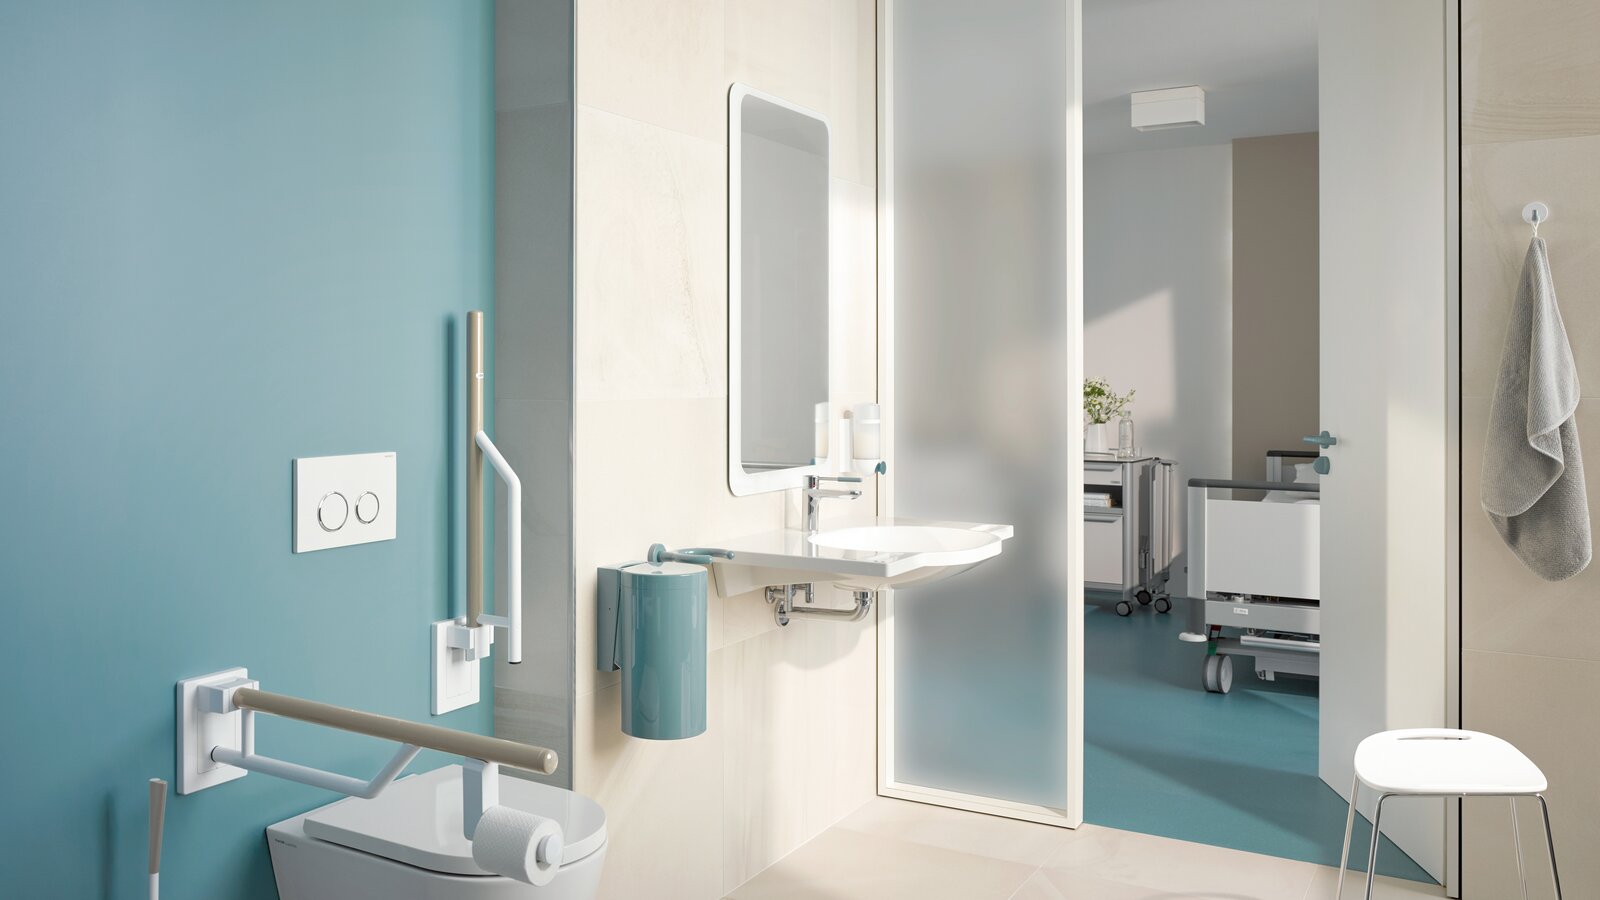 Patientenbad mit barrierefreien Produkten der HEWI Serie 800K mit Blick durch die Badtür ins Patientenzimmer